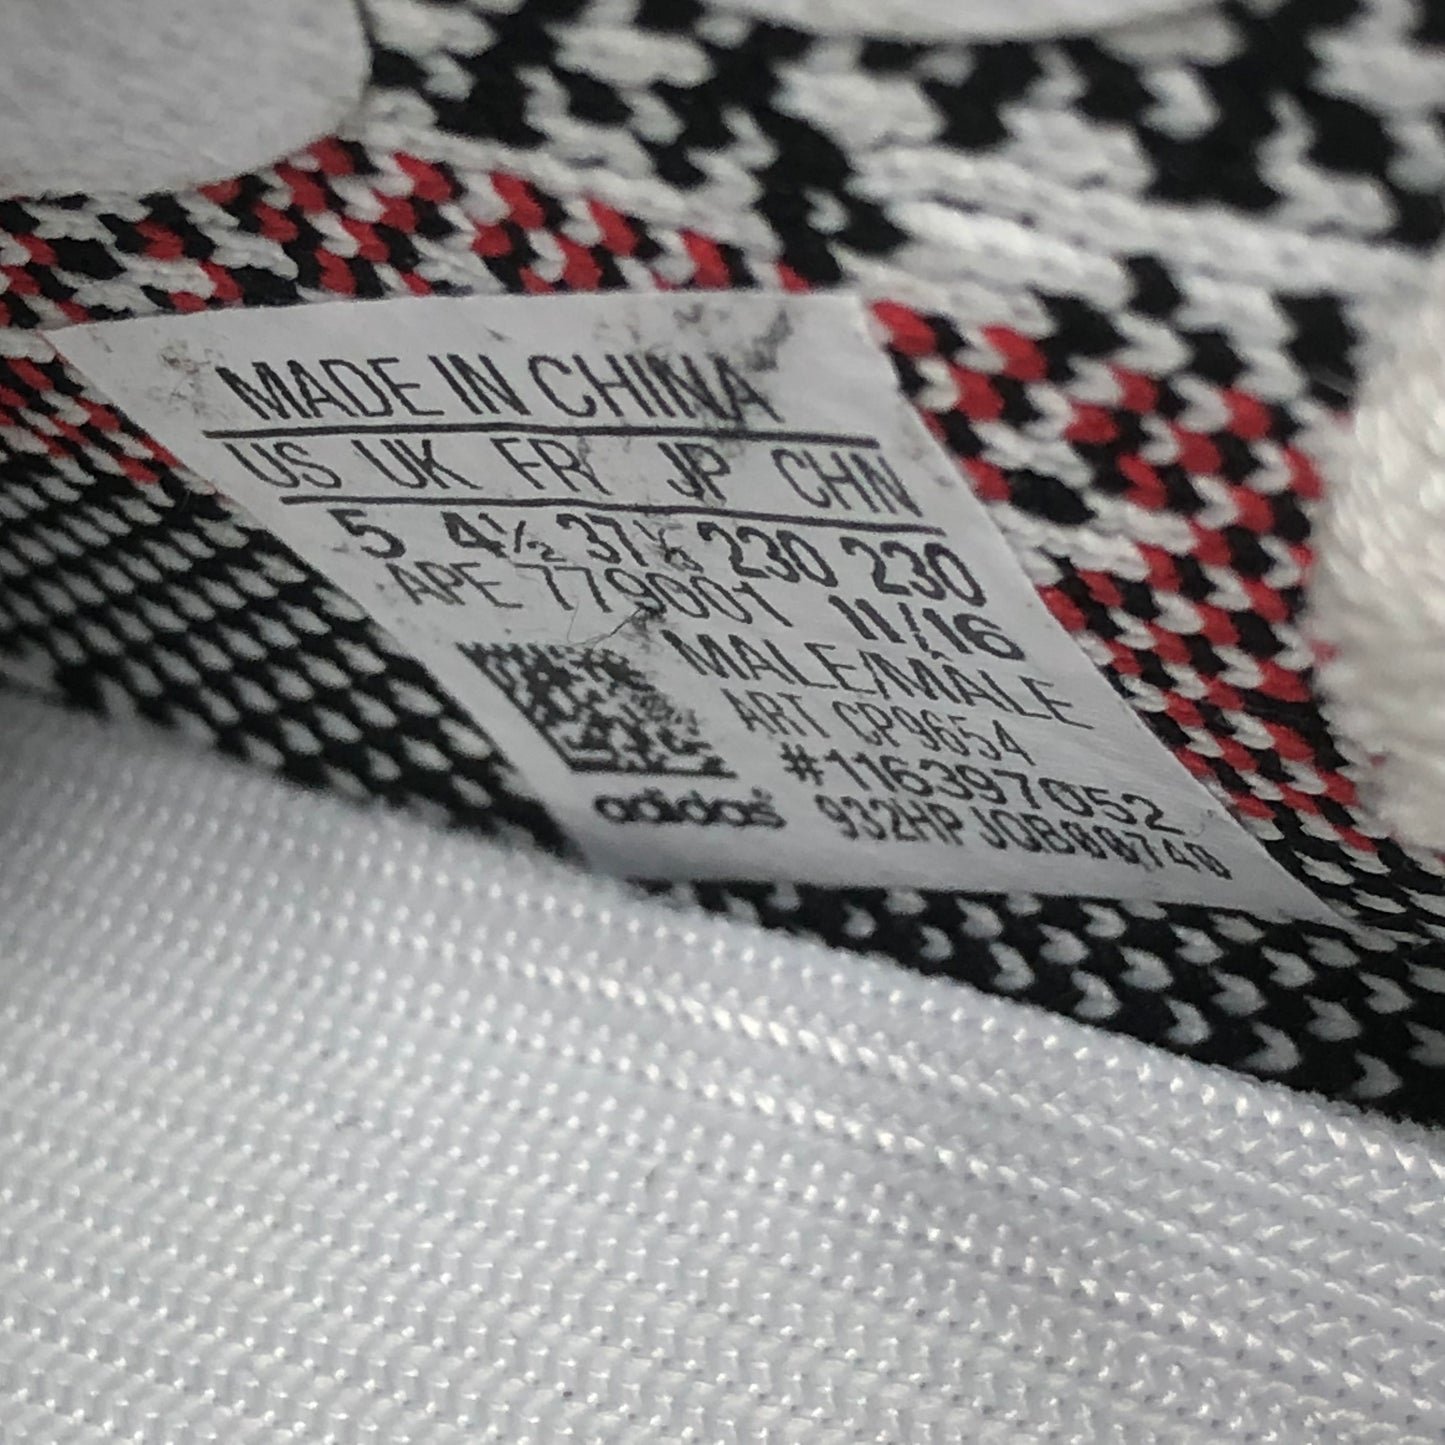 Adidas Yeezy Boost 350 V2 Zebra Size 5 White/Black CP9654